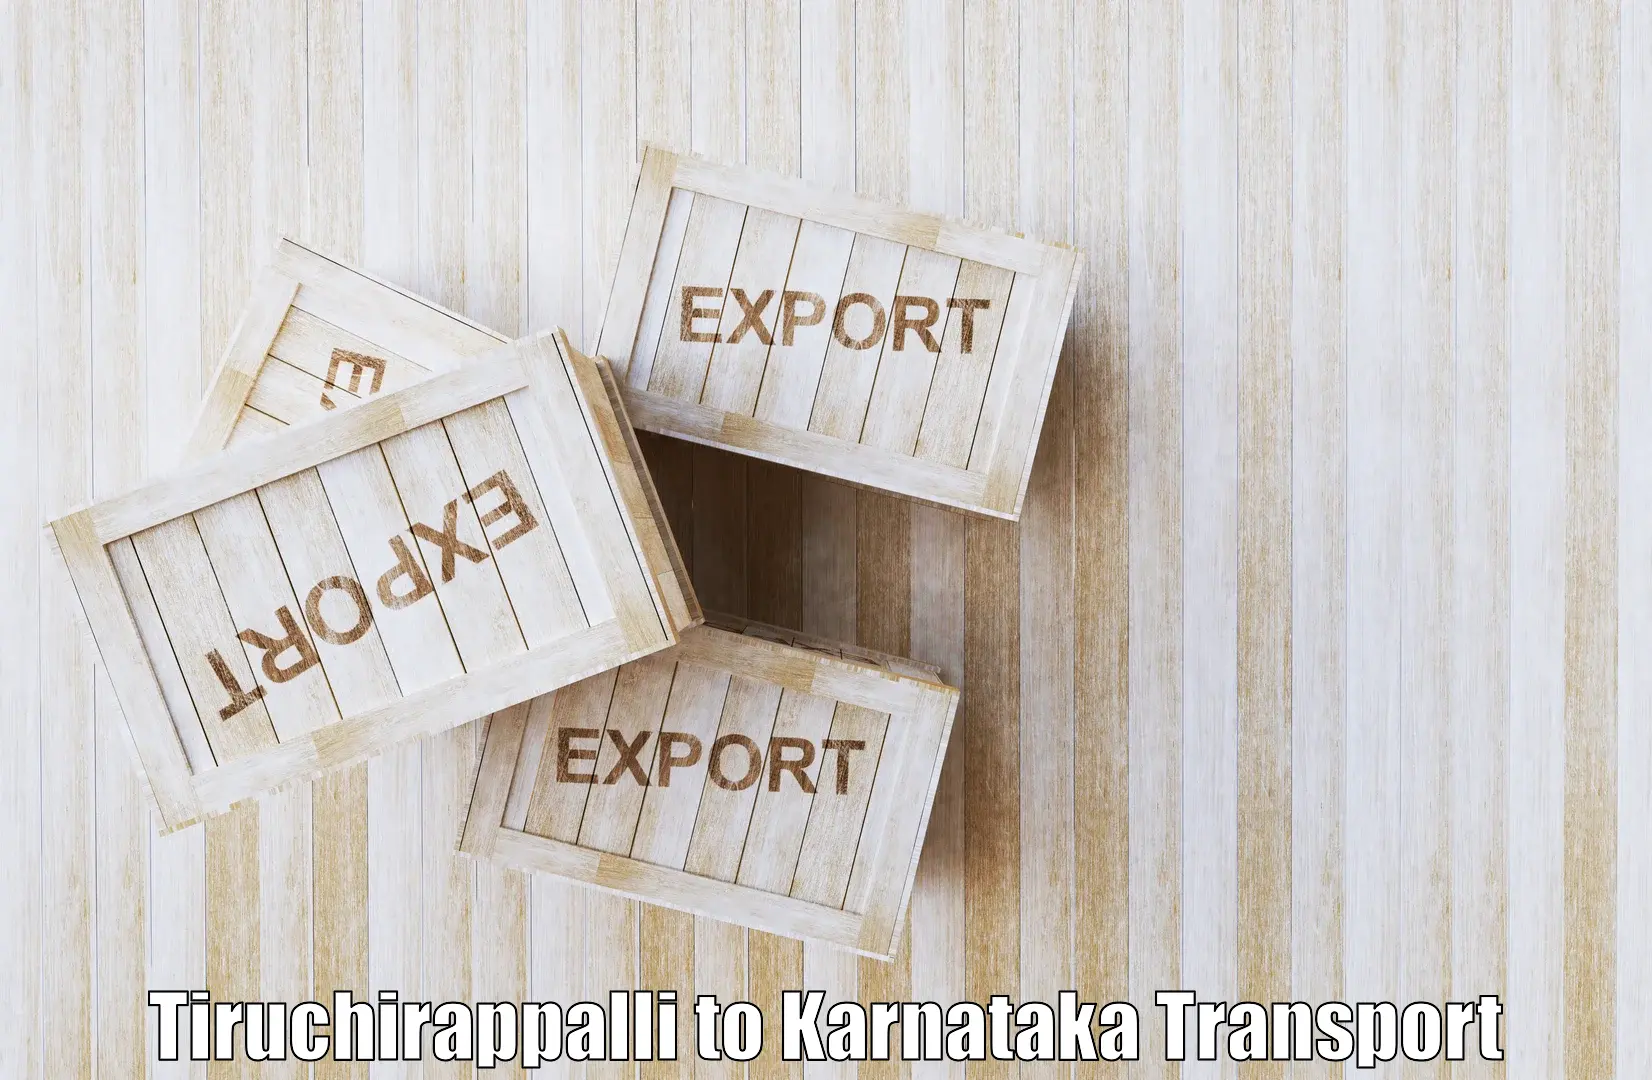 Nearest transport service Tiruchirappalli to Nagamangala